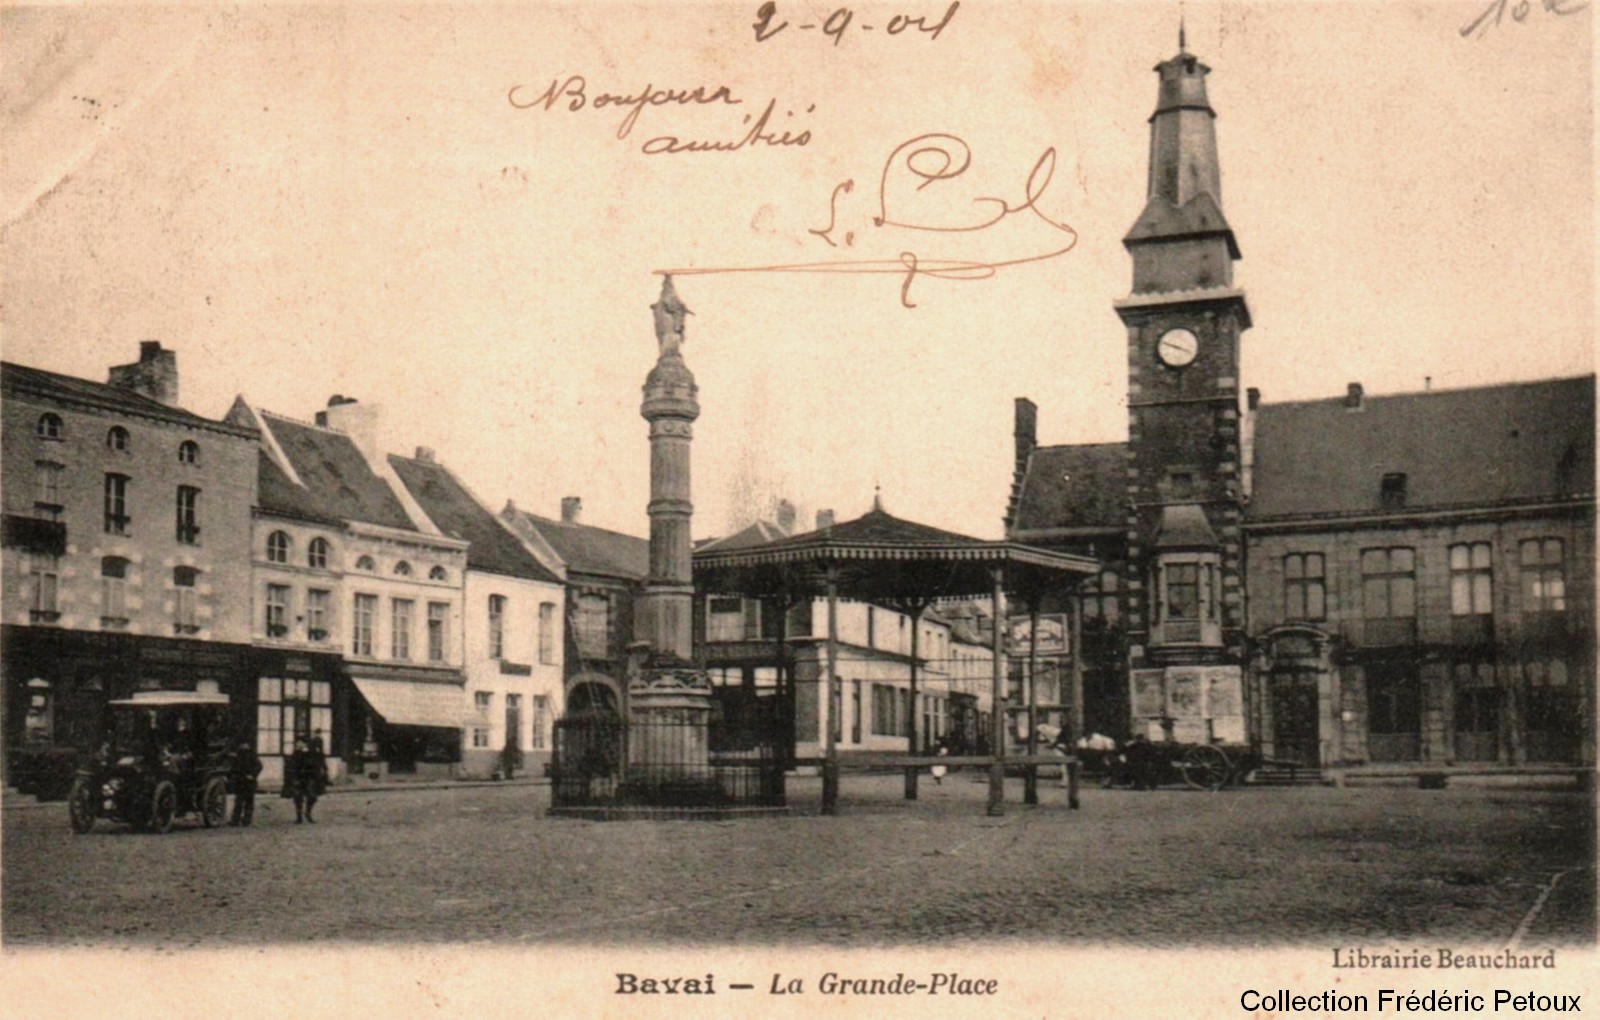 Le kiosque à musique de Bavay, carte postale ancienne.